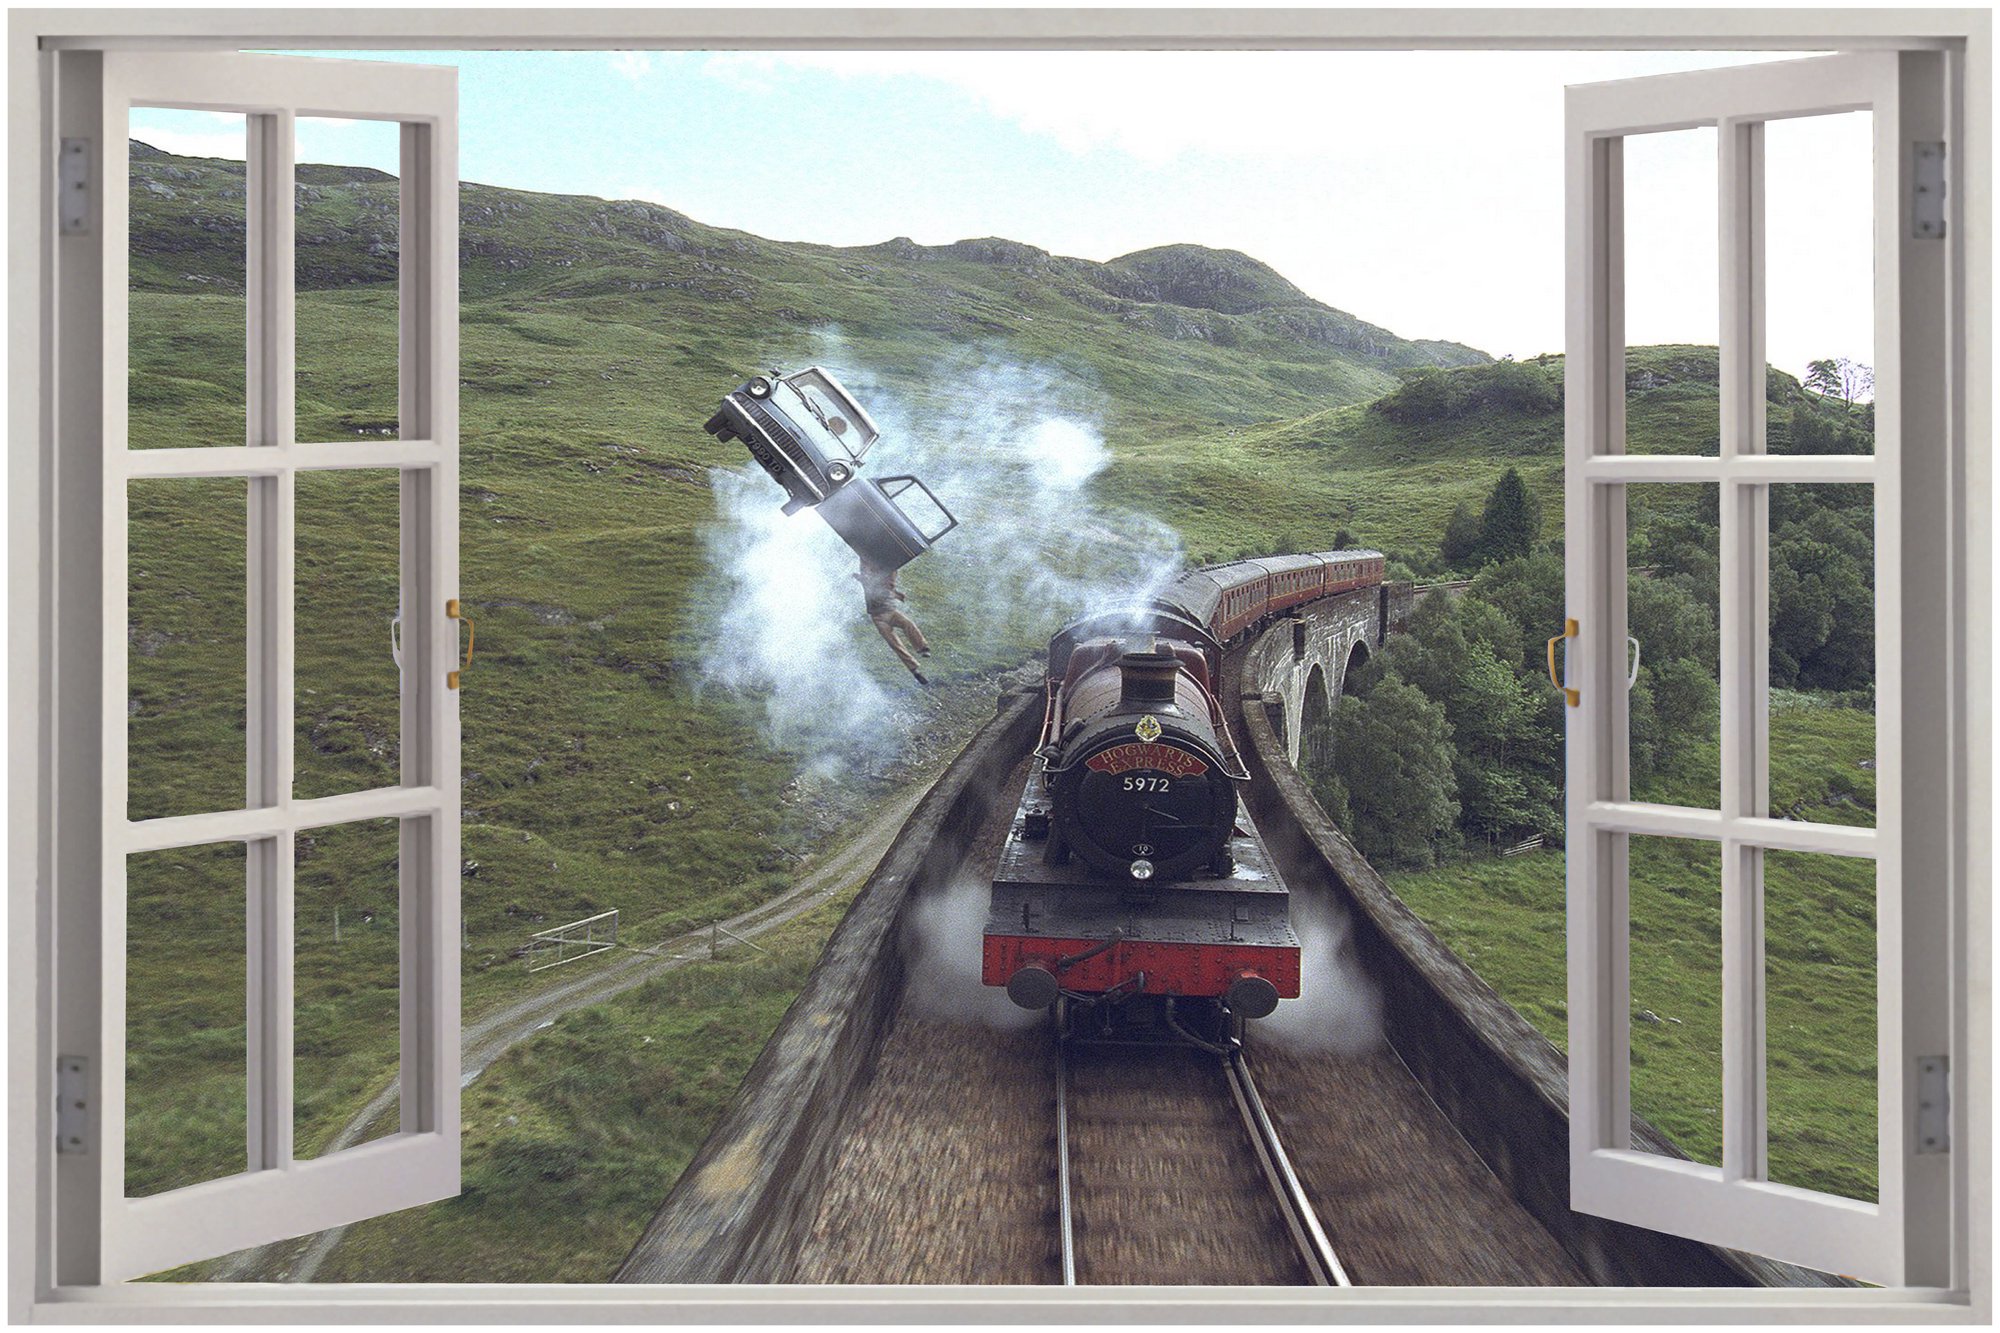   Window Hogwarts Express View Wall Stickers Mural Art Decal Wallpaper